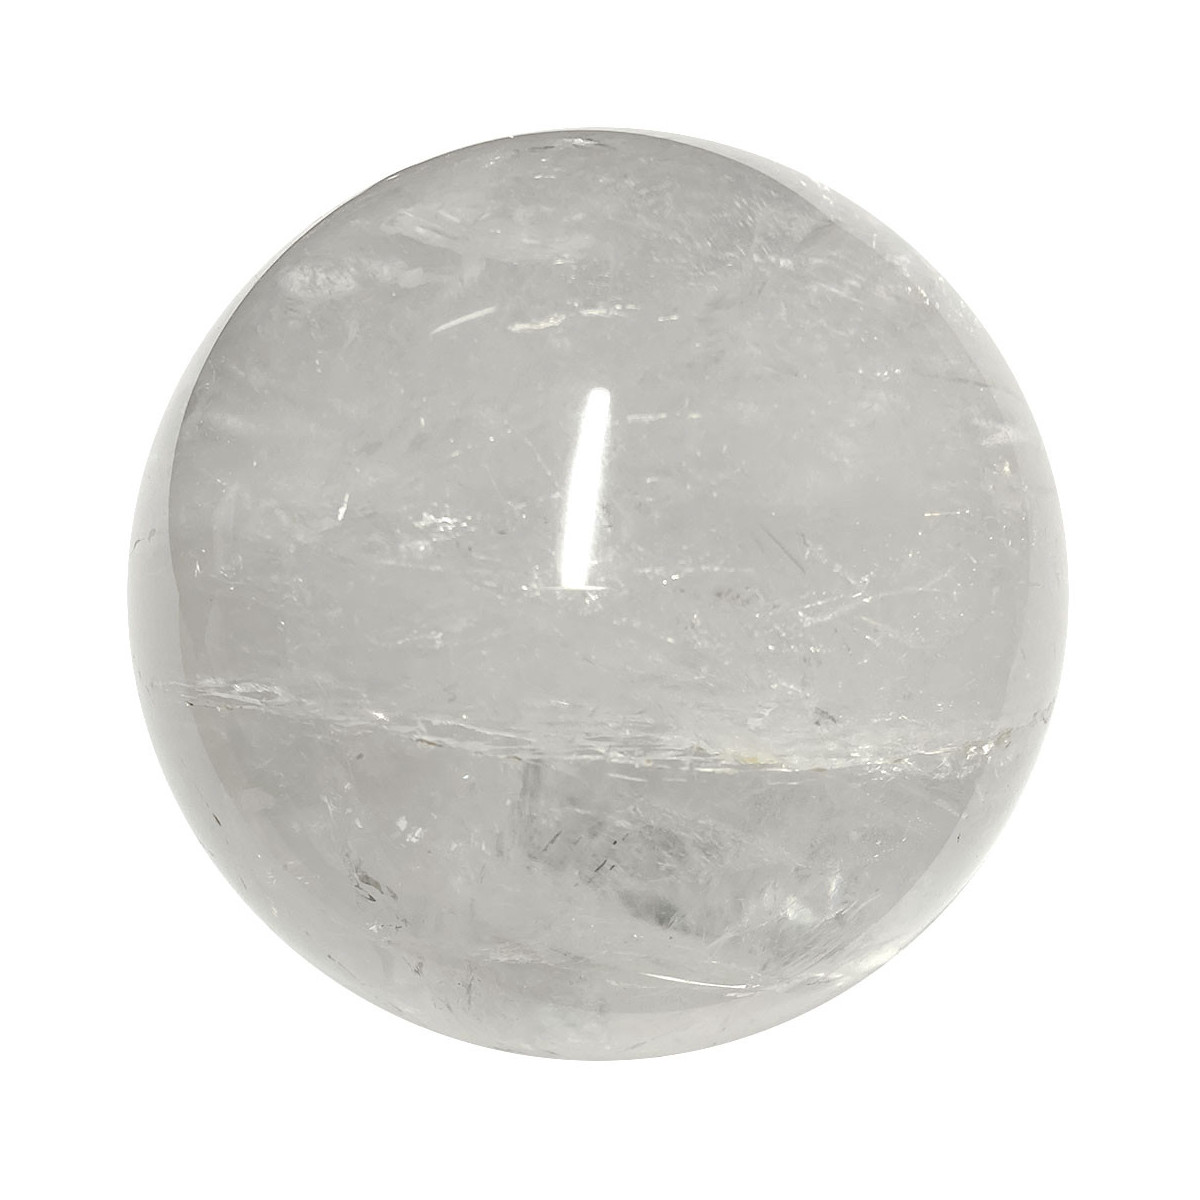 Sphère en Cristal de Roche - 655 Grammes